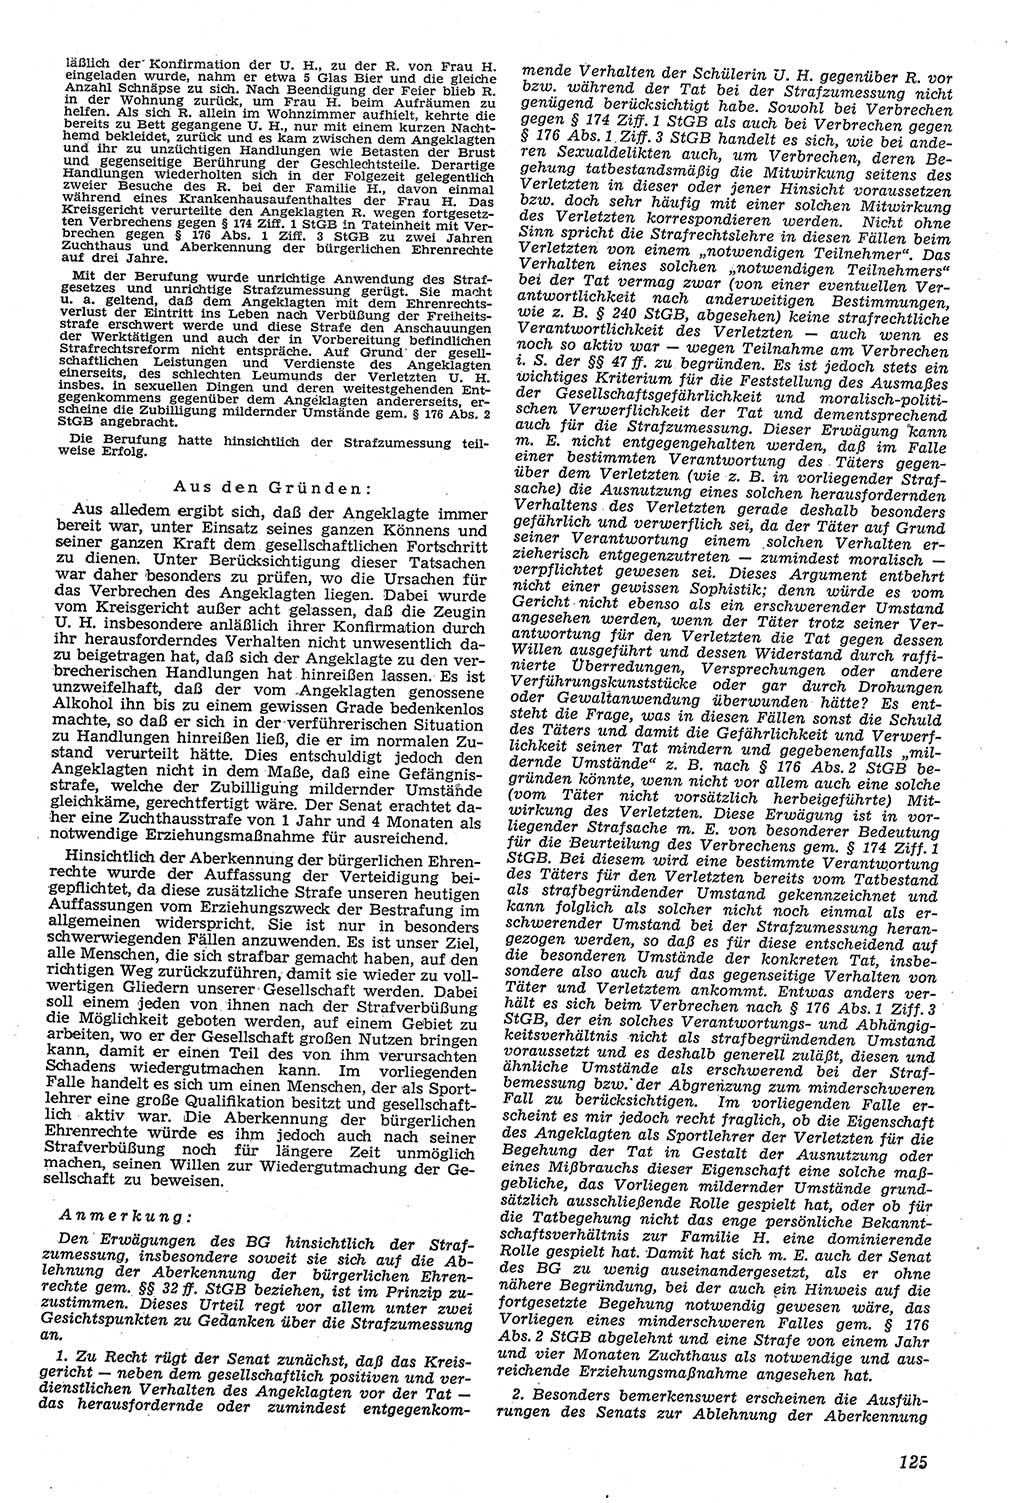 Neue Justiz (NJ), Zeitschrift für Recht und Rechtswissenschaft [Deutsche Demokratische Republik (DDR)], 11. Jahrgang 1957, Seite 125 (NJ DDR 1957, S. 125)